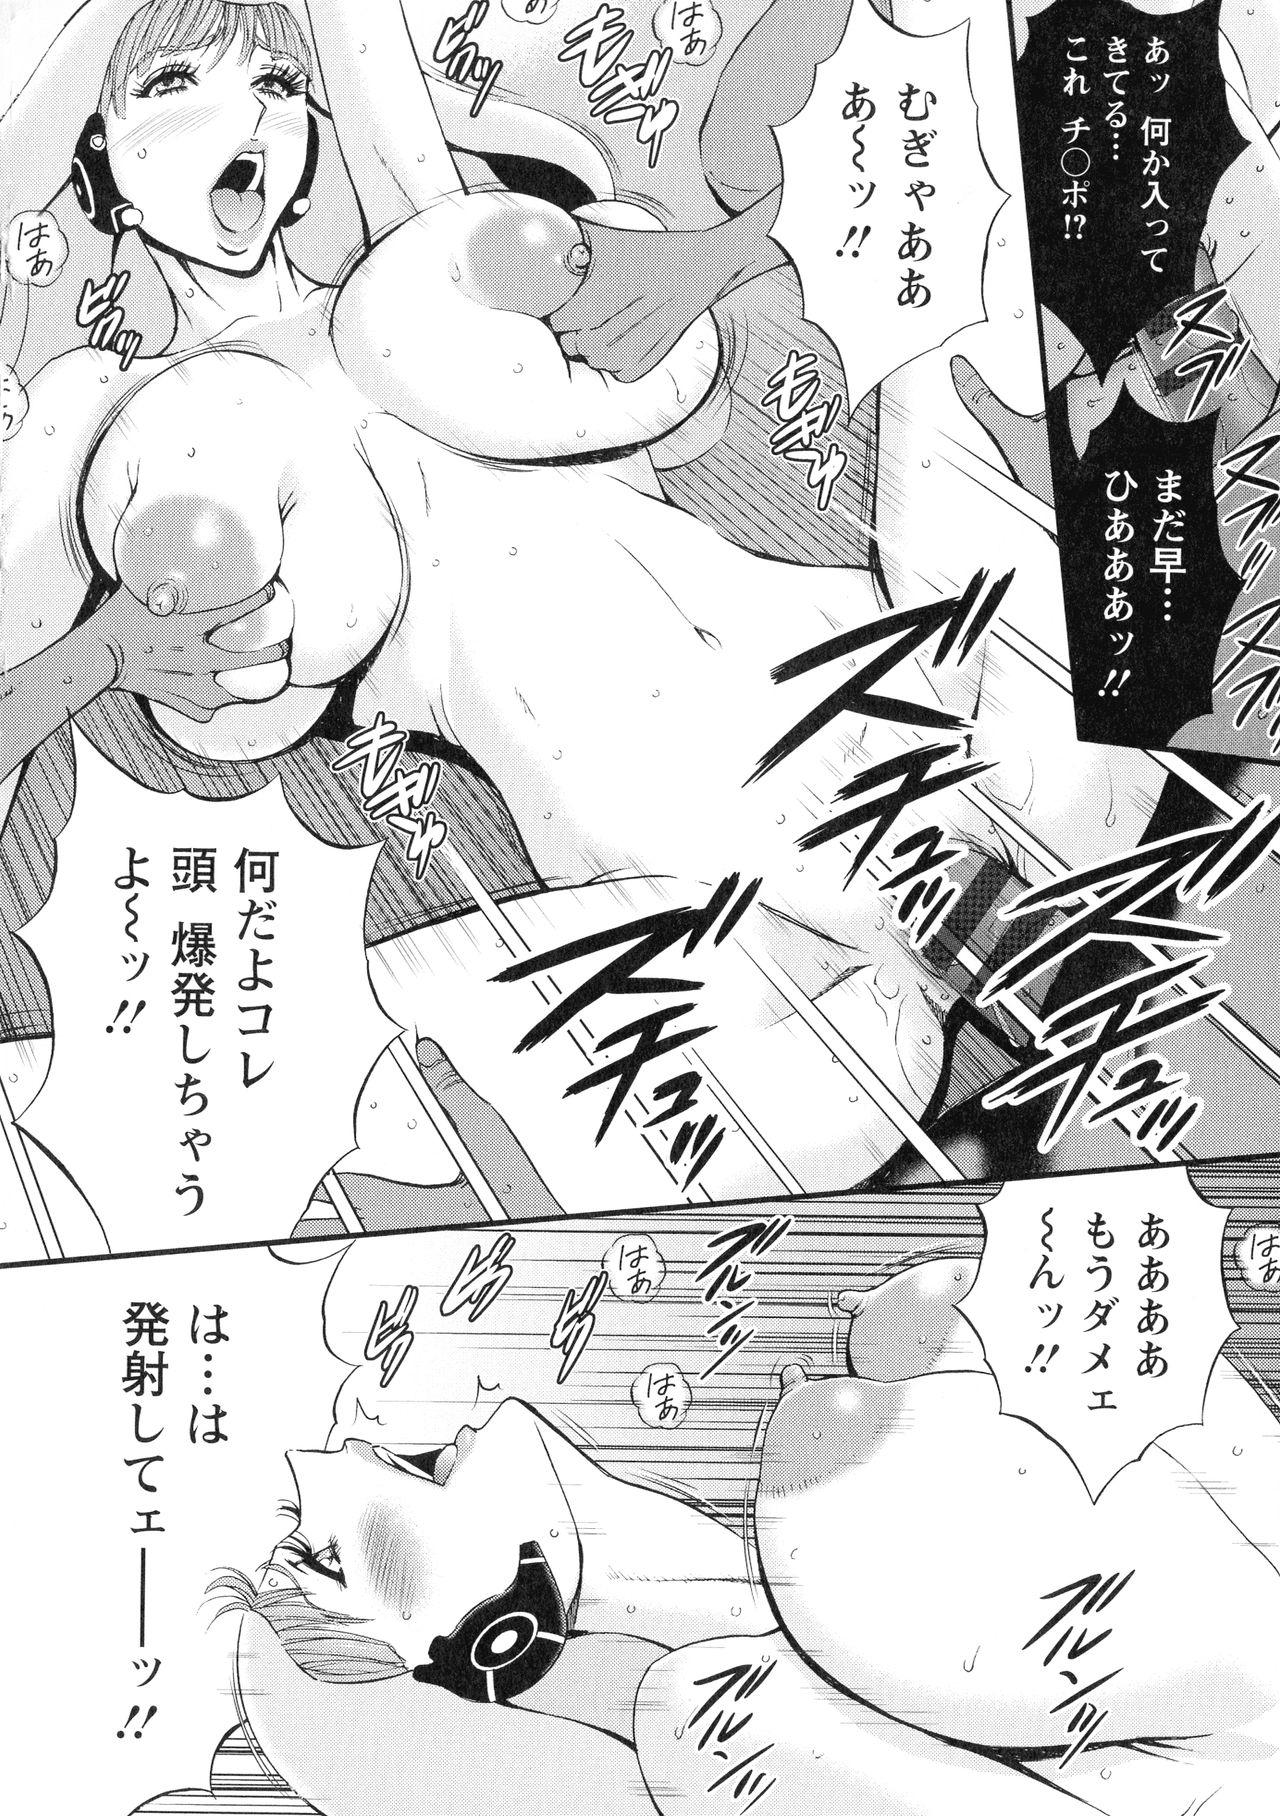 [Nakashima Chosuke] Seireki 2200-nen no Ota 3 Zetchou Time-Slip Girl 164